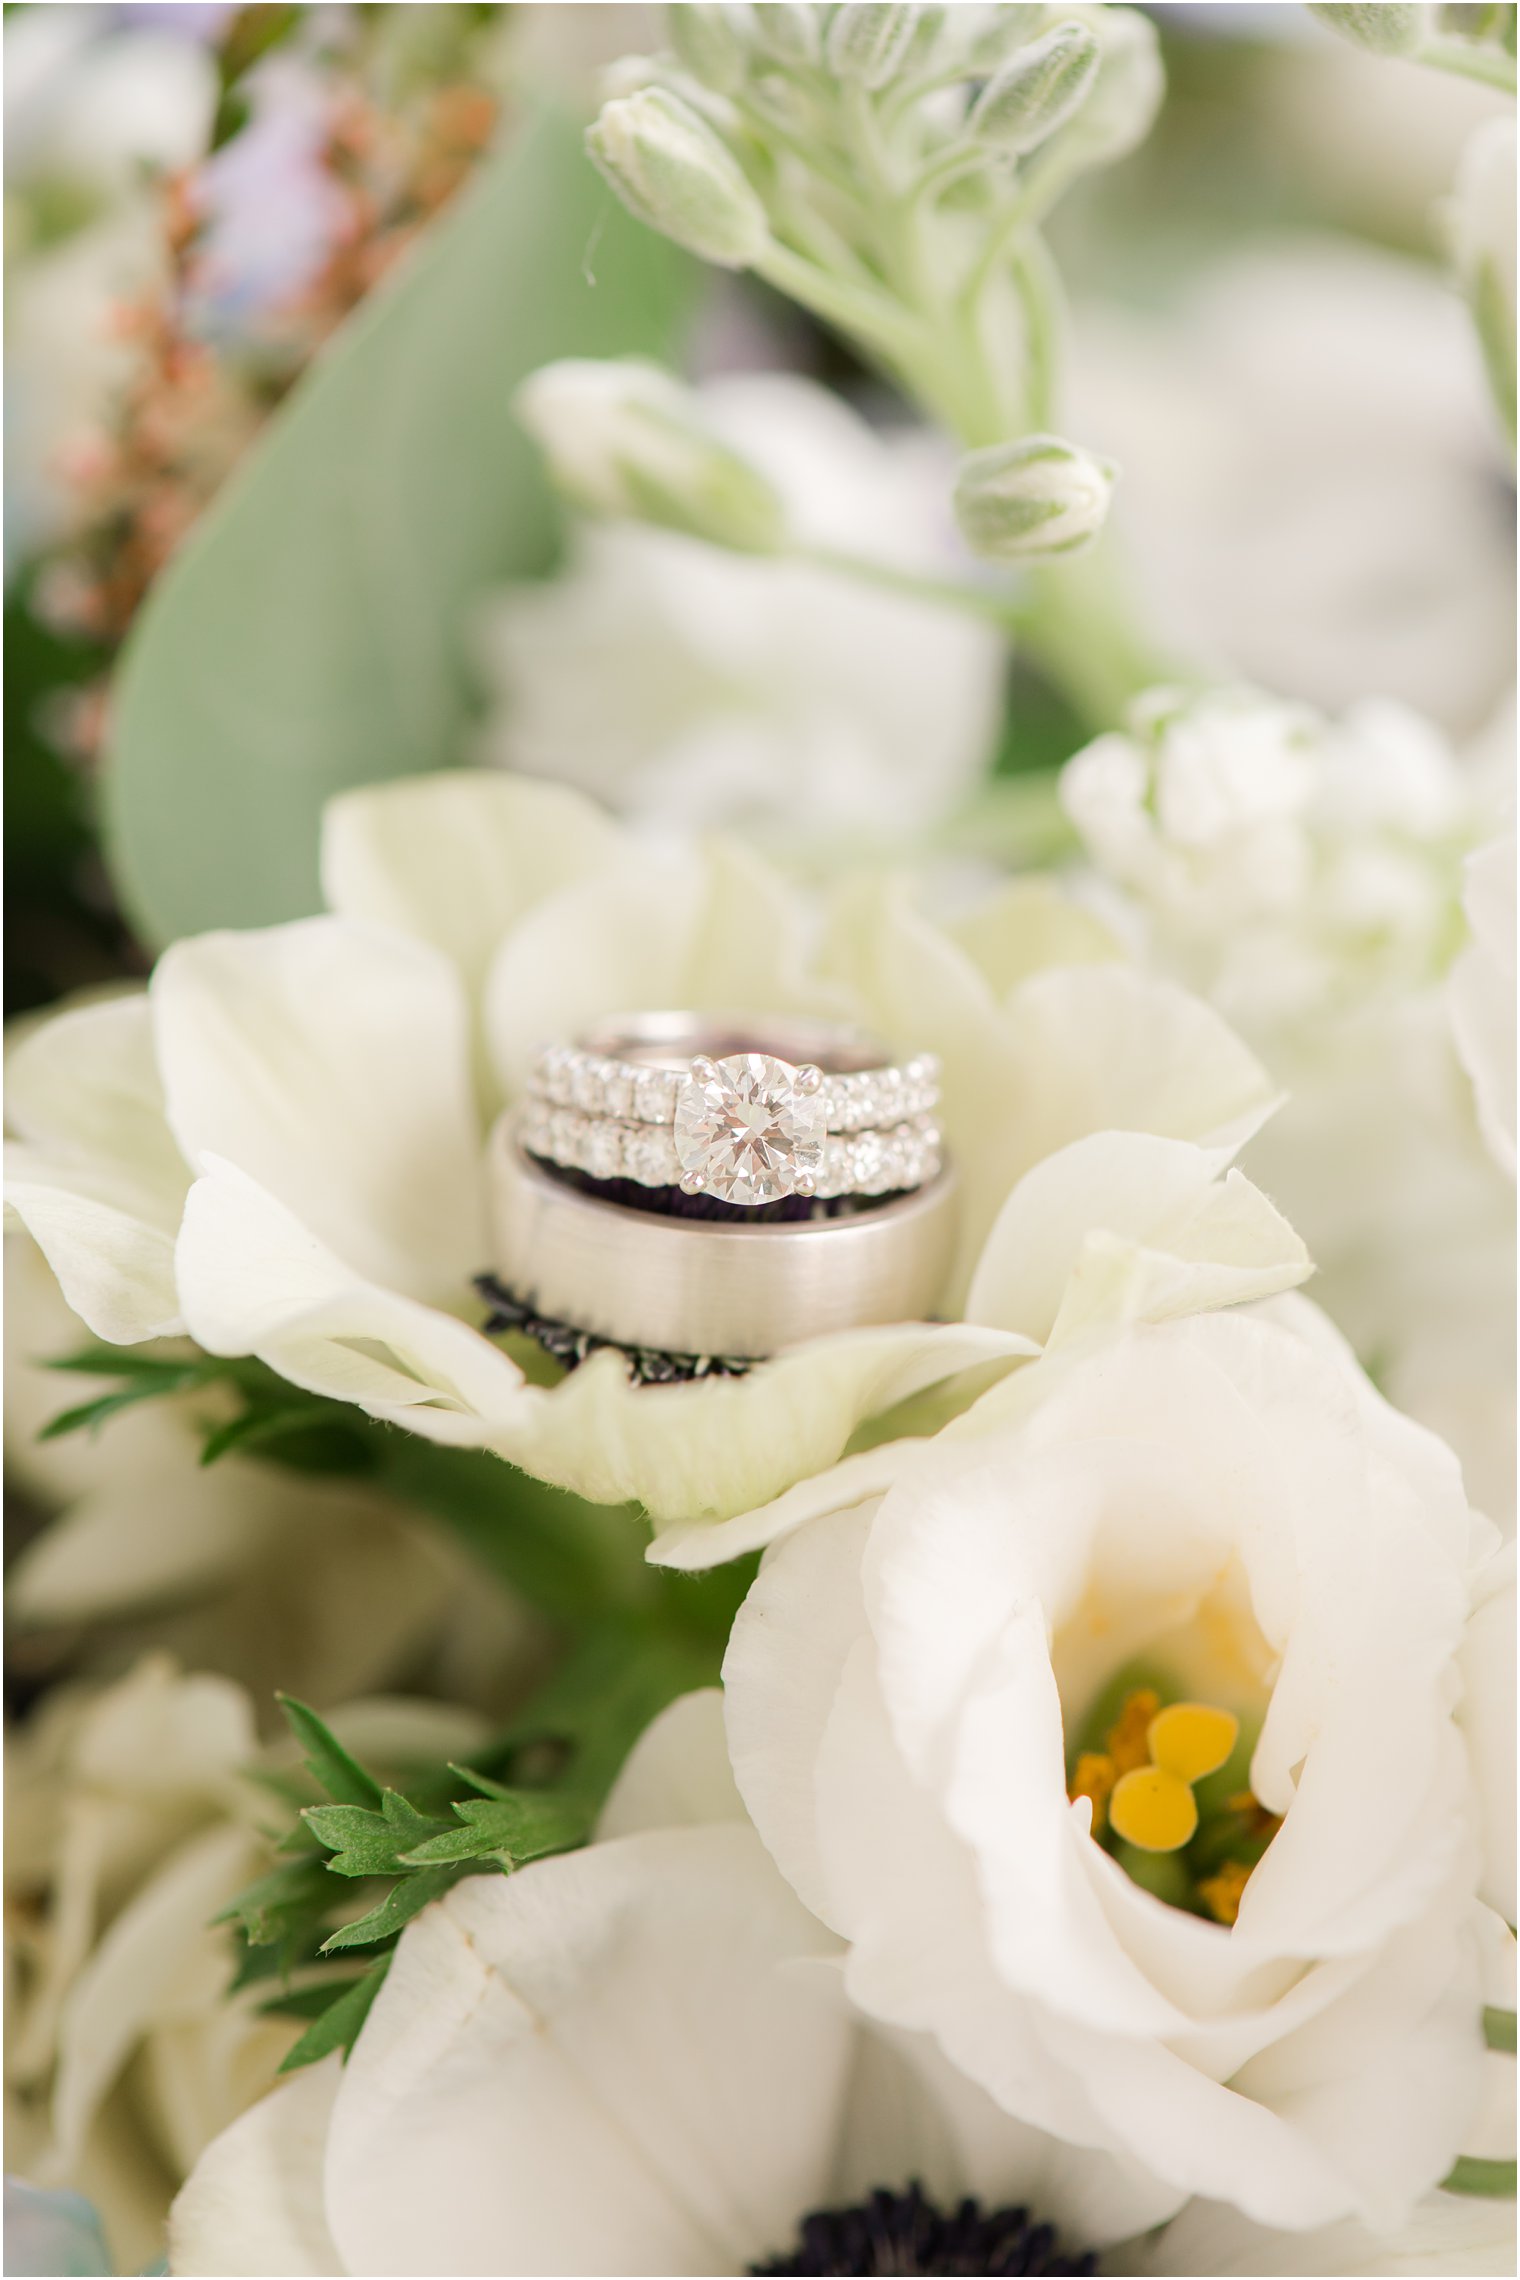 wedding rings rest on white flowers before NJ wedding